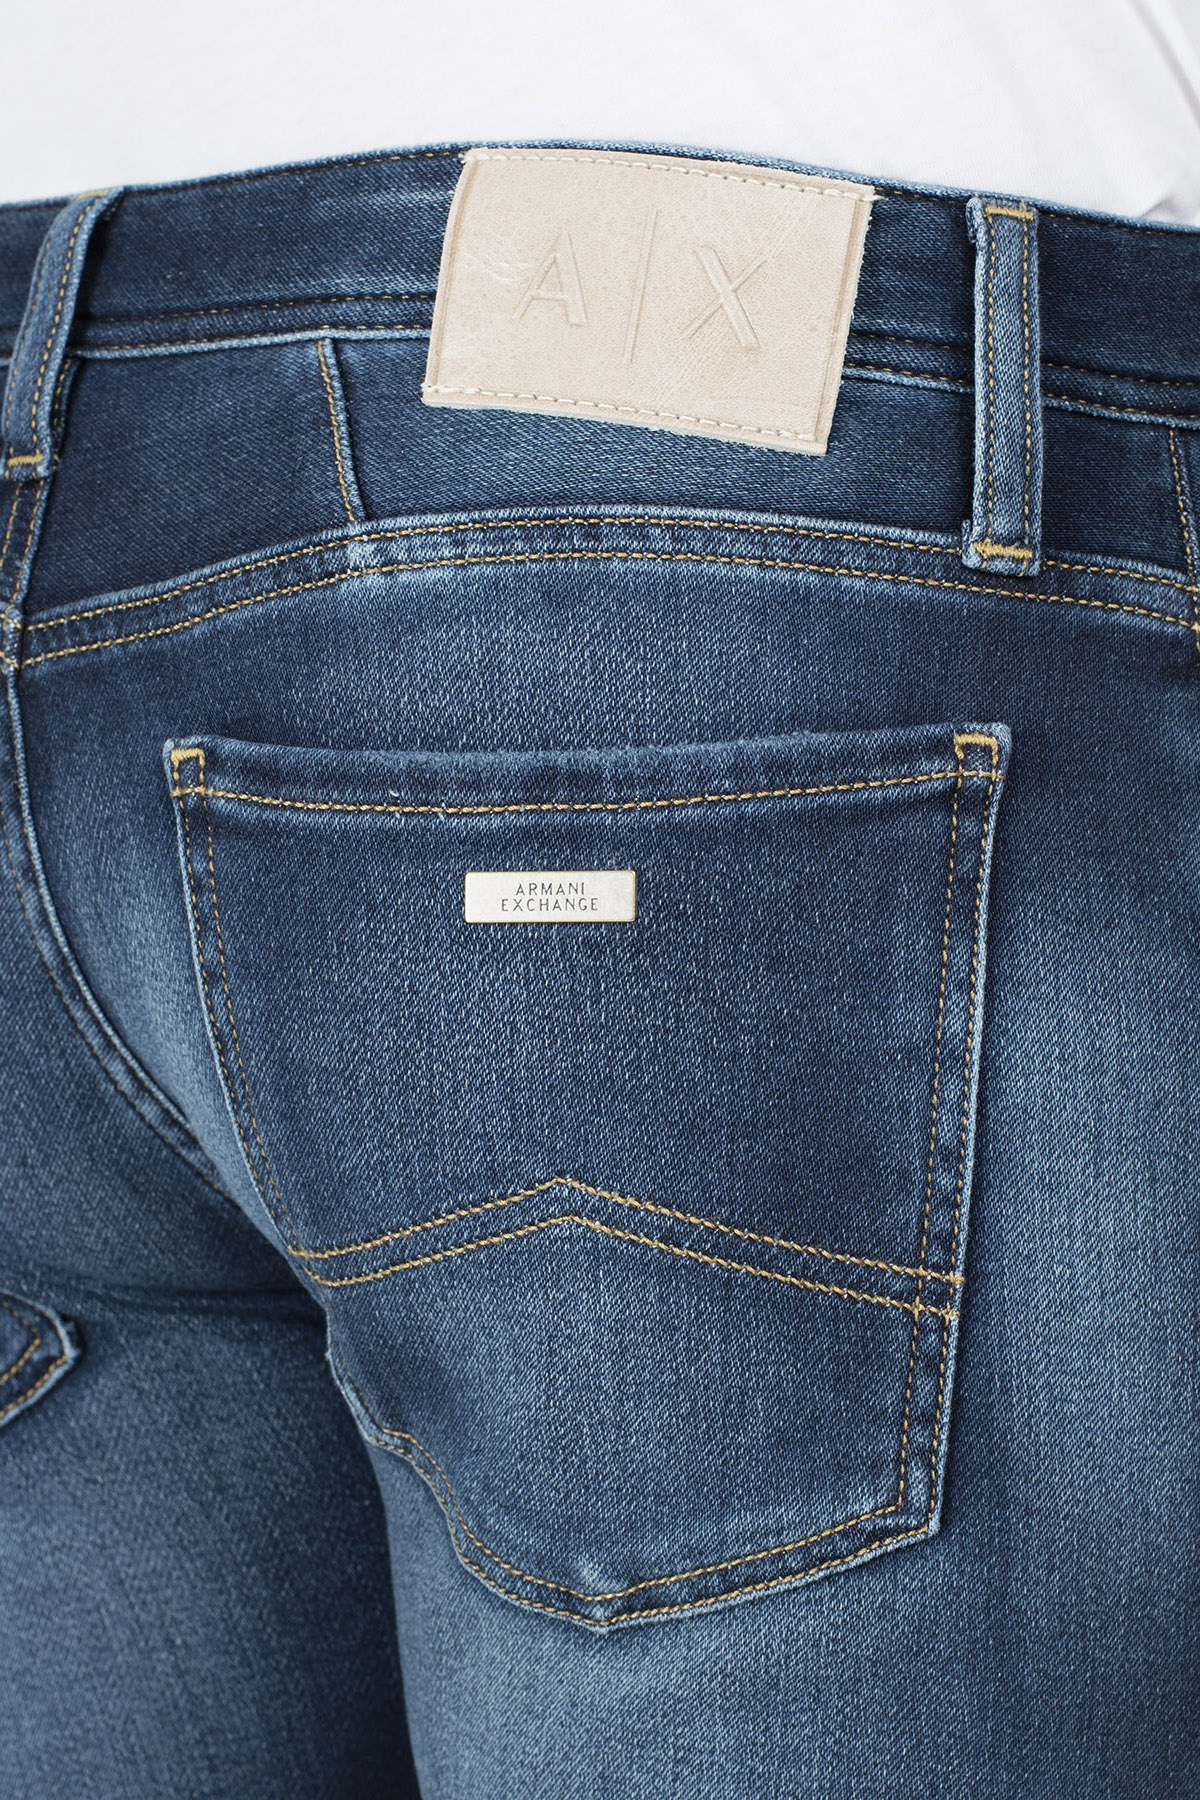 Armani Exchange J14 Jeans Erkek Kot Pantolon 3HZJ14 Z4QMZ 1500 LACİVERT